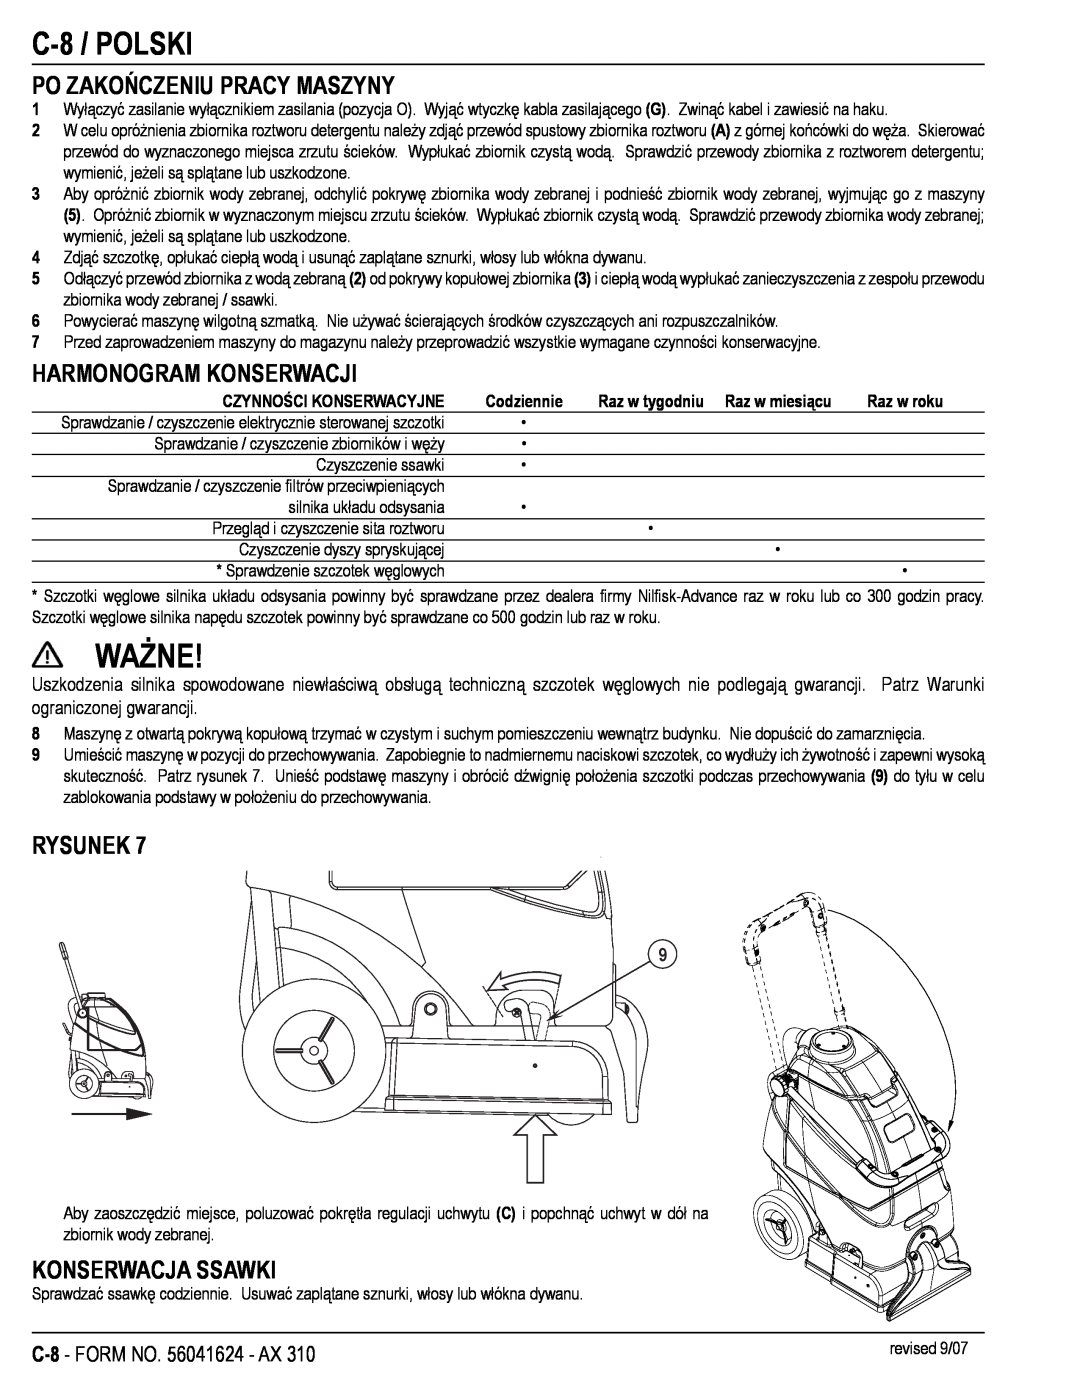 Nilfisk-ALTO 56265303 manual Ważne, C-8 /POLSKI, Po Zakończeniu Pracy Maszyny, Harmonogram Konserwacji, Konserwacja Ssawki 